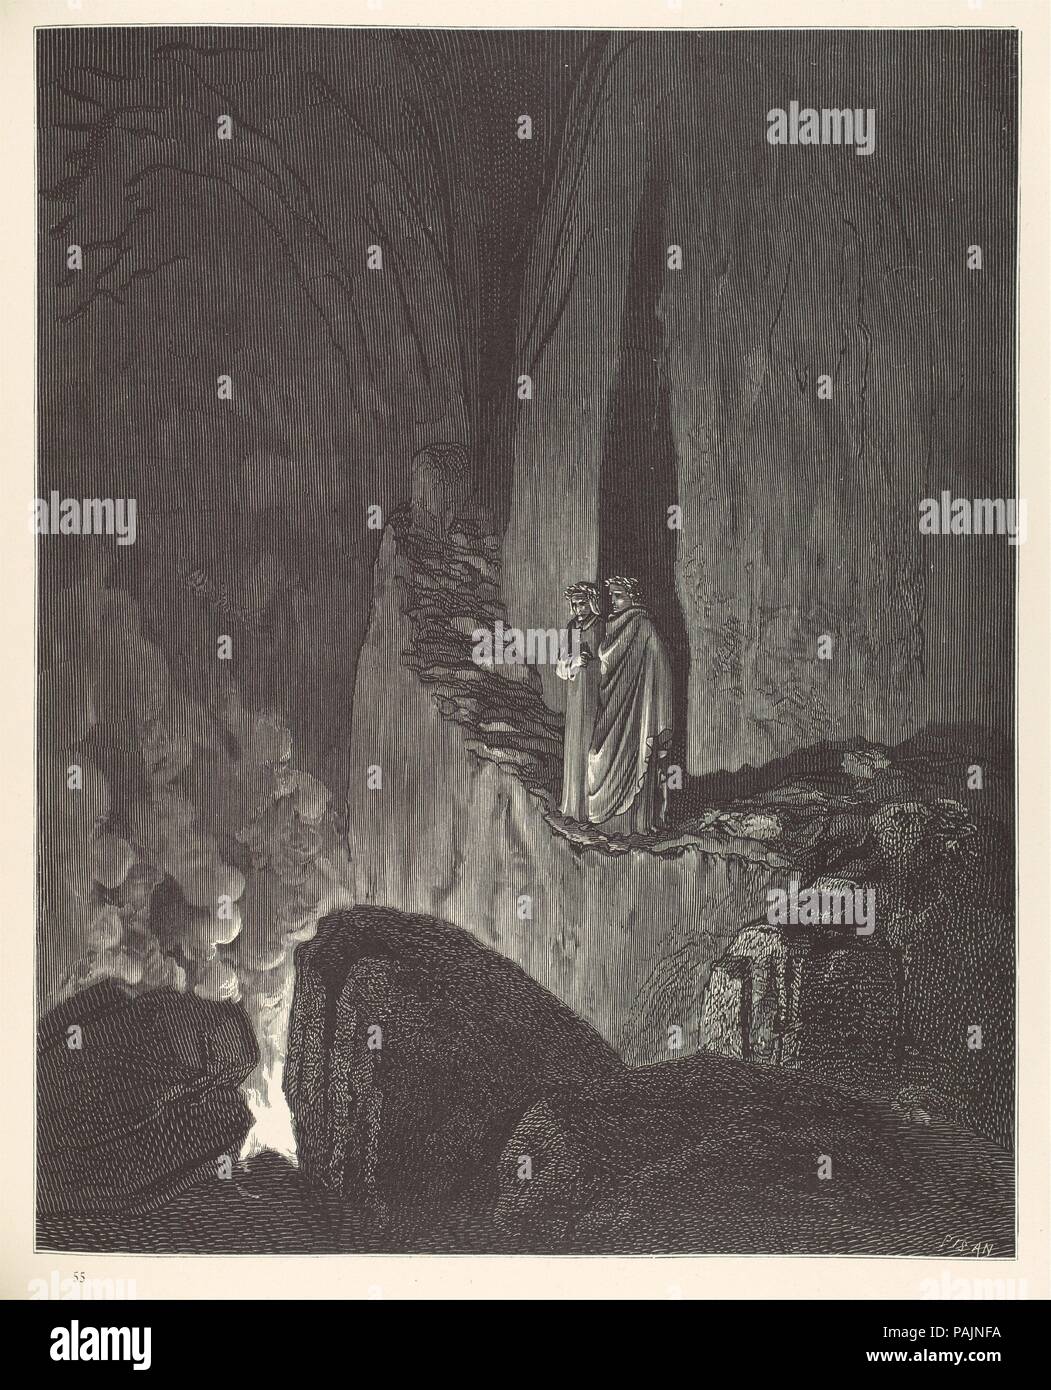 La visión de Hell (infierno). Autor: Dante Alighieri (Italiano, Florencia, ca. 1265-1321 Ravenna). Dimensiones: 15 x 12 x 1 1/8 3/4 in. (38,4 x 30,5 x 4,5 cm) Hoja: 14 3/4 x 10 5/8 pulg. (37,5 x 27 cm). Grabador: Hélidore-Joseph Pisana (Francés, Marsella 1822-1890 Bailly). Illustrator: francés Gustave Doré (Estrasburgo, París, 1832-1883). Editor: Cassell, Petter y Galpin Londres. Traductor: Henry Francis Cary (British (padres irlandeses), Gibraltar Londres 1772-1844). Fecha: 1866. Fuera de su facilidad para el humor grotesco y el Gaslight melodrama, Doré; inventado unos 10.000 ilustraciones para libros y ma Foto de stock